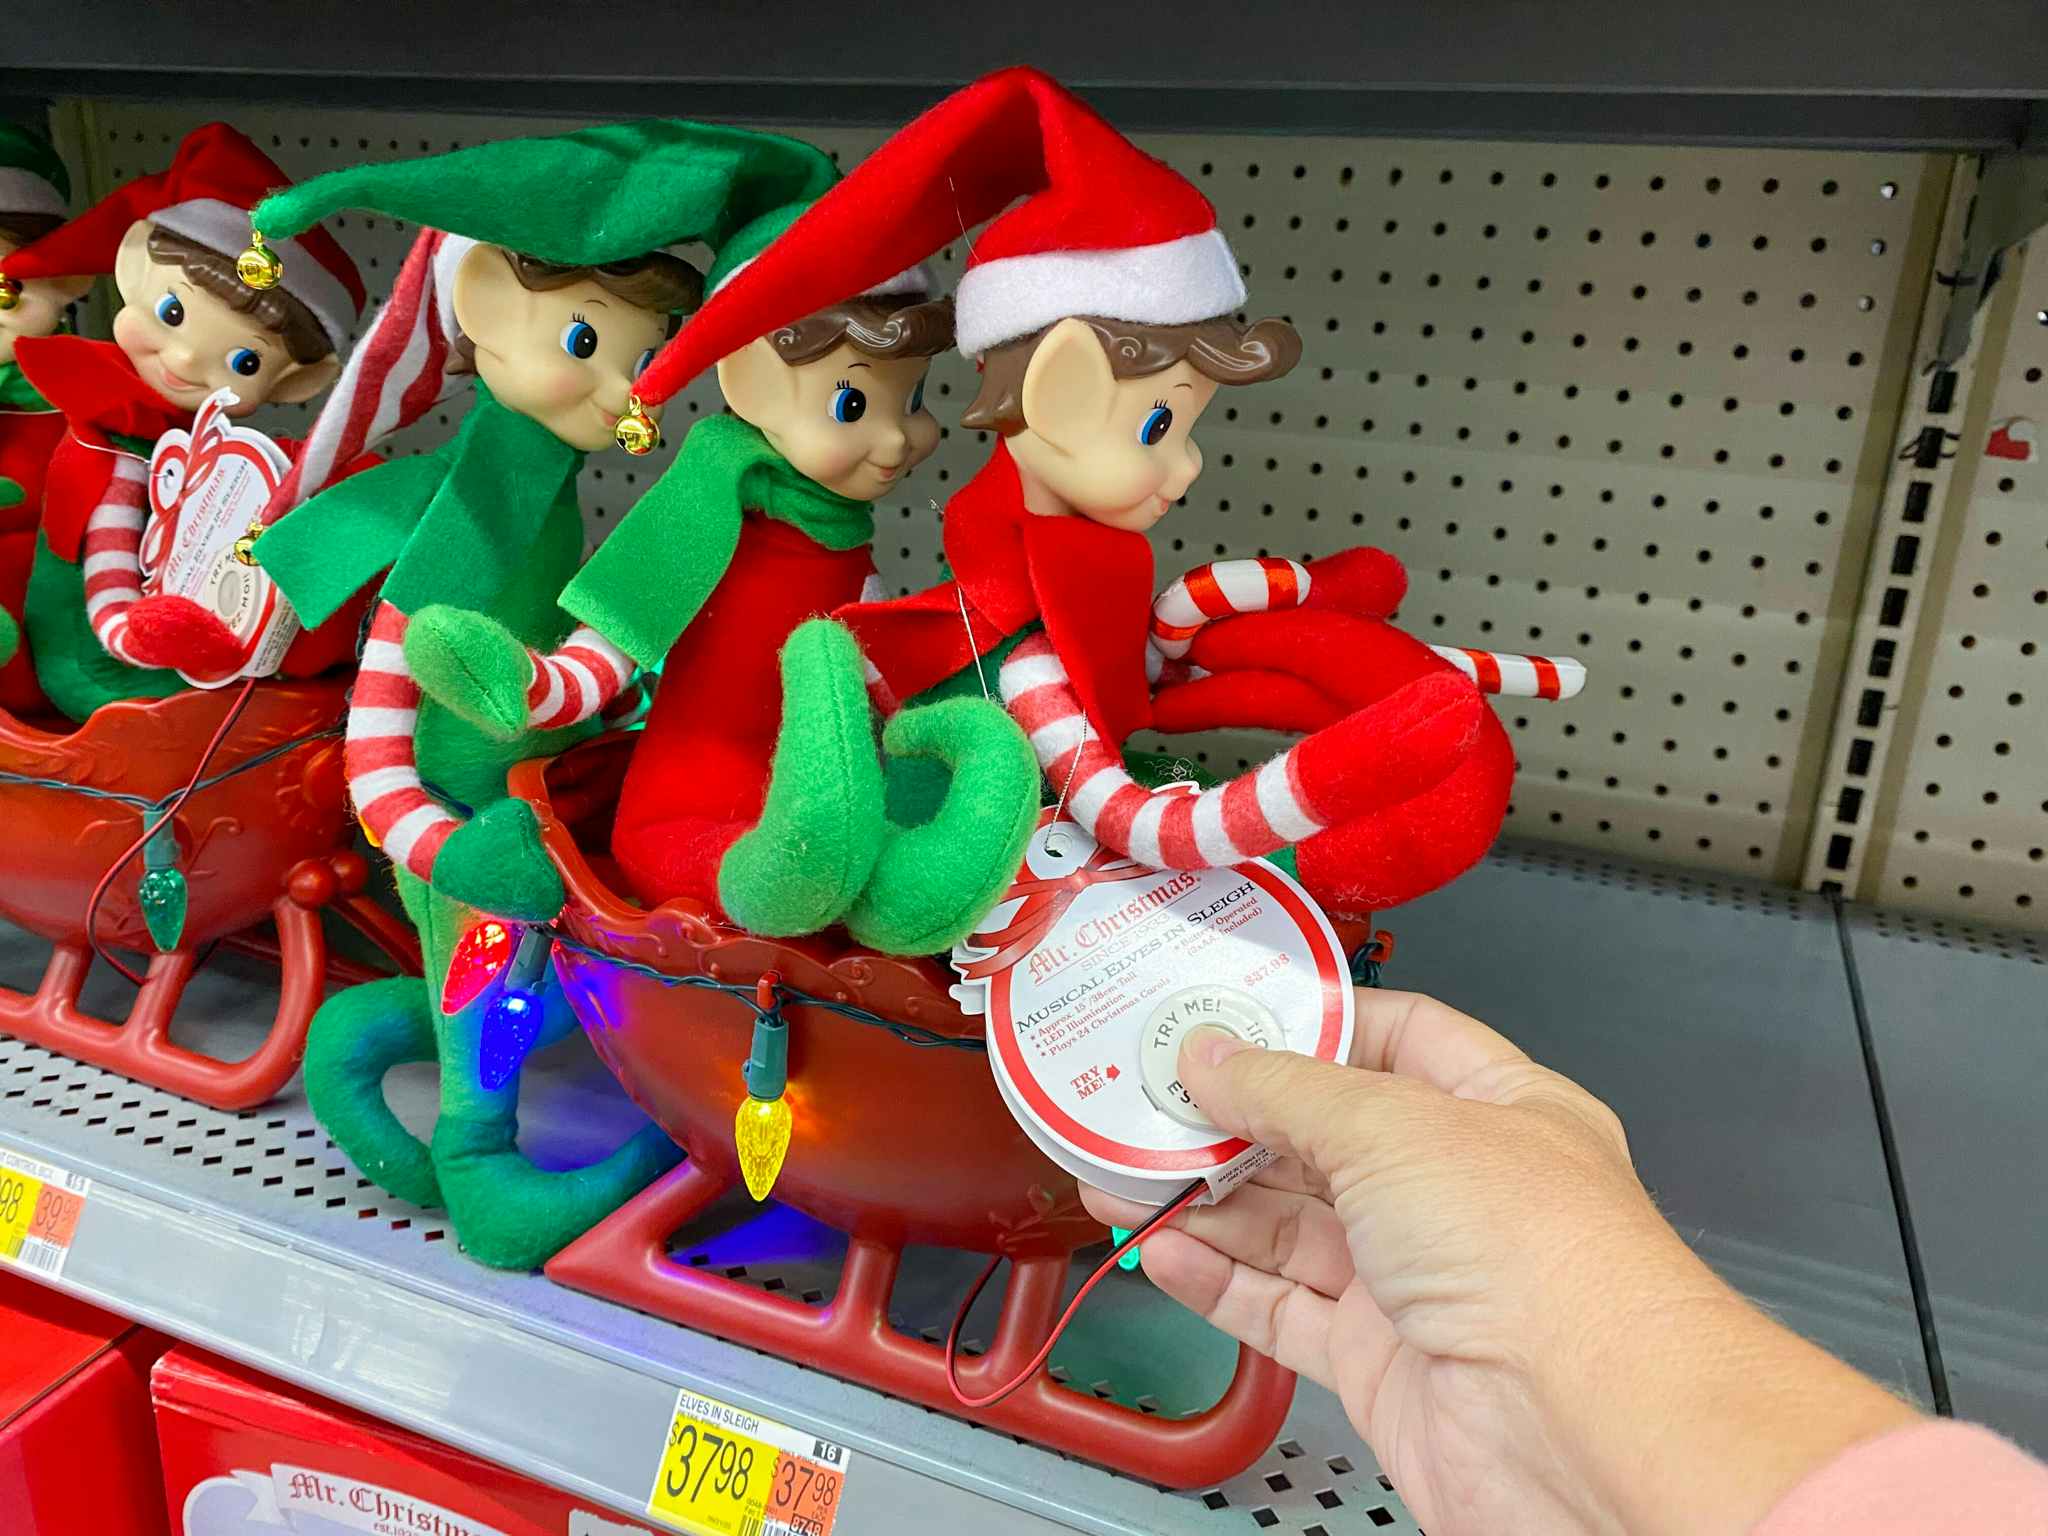 mr christmas musical elves in sleigh on walmart shelf